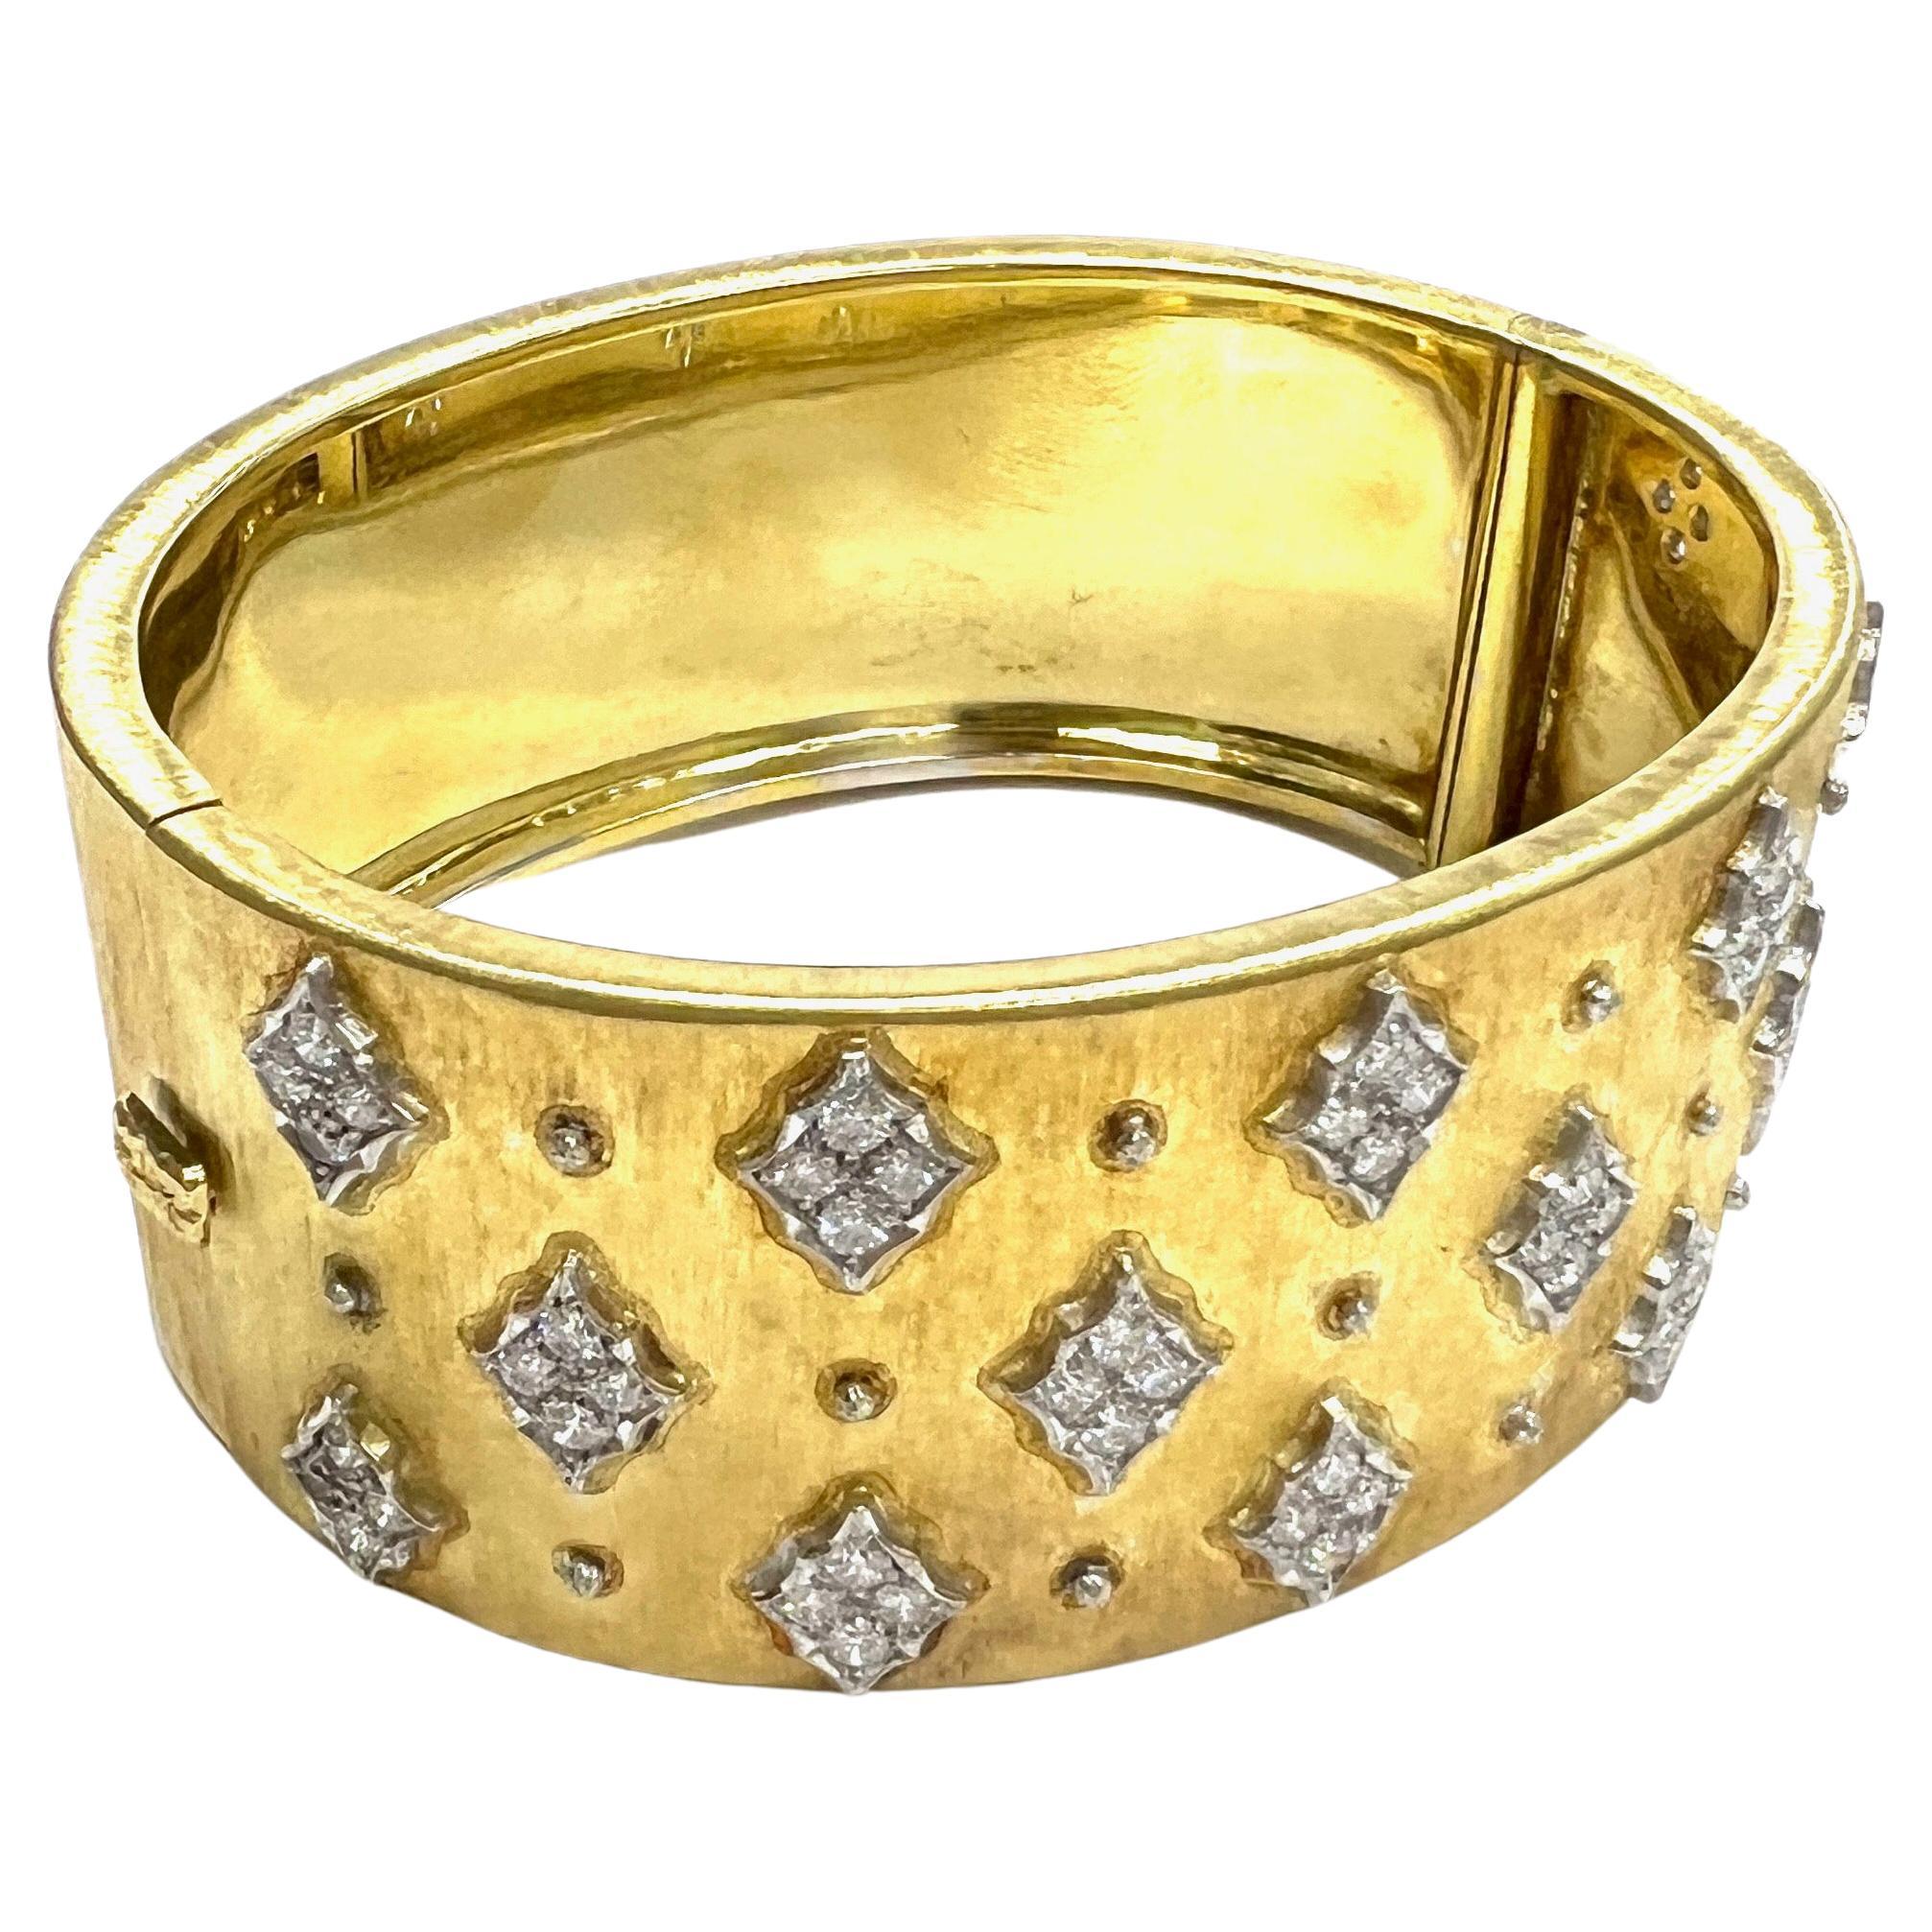 Mario Buccellati Diamant-Armband aus Gelbgold mit breitem Armreif

Gelbgold mit Diamanten im Rundschliff von ca. 1,70 Karat; markiert M. Buccellati

Größe: Breite 1 Zoll; Innenumfang 6,75 Zoll
Gesamtgewicht: 67,3 Gramm